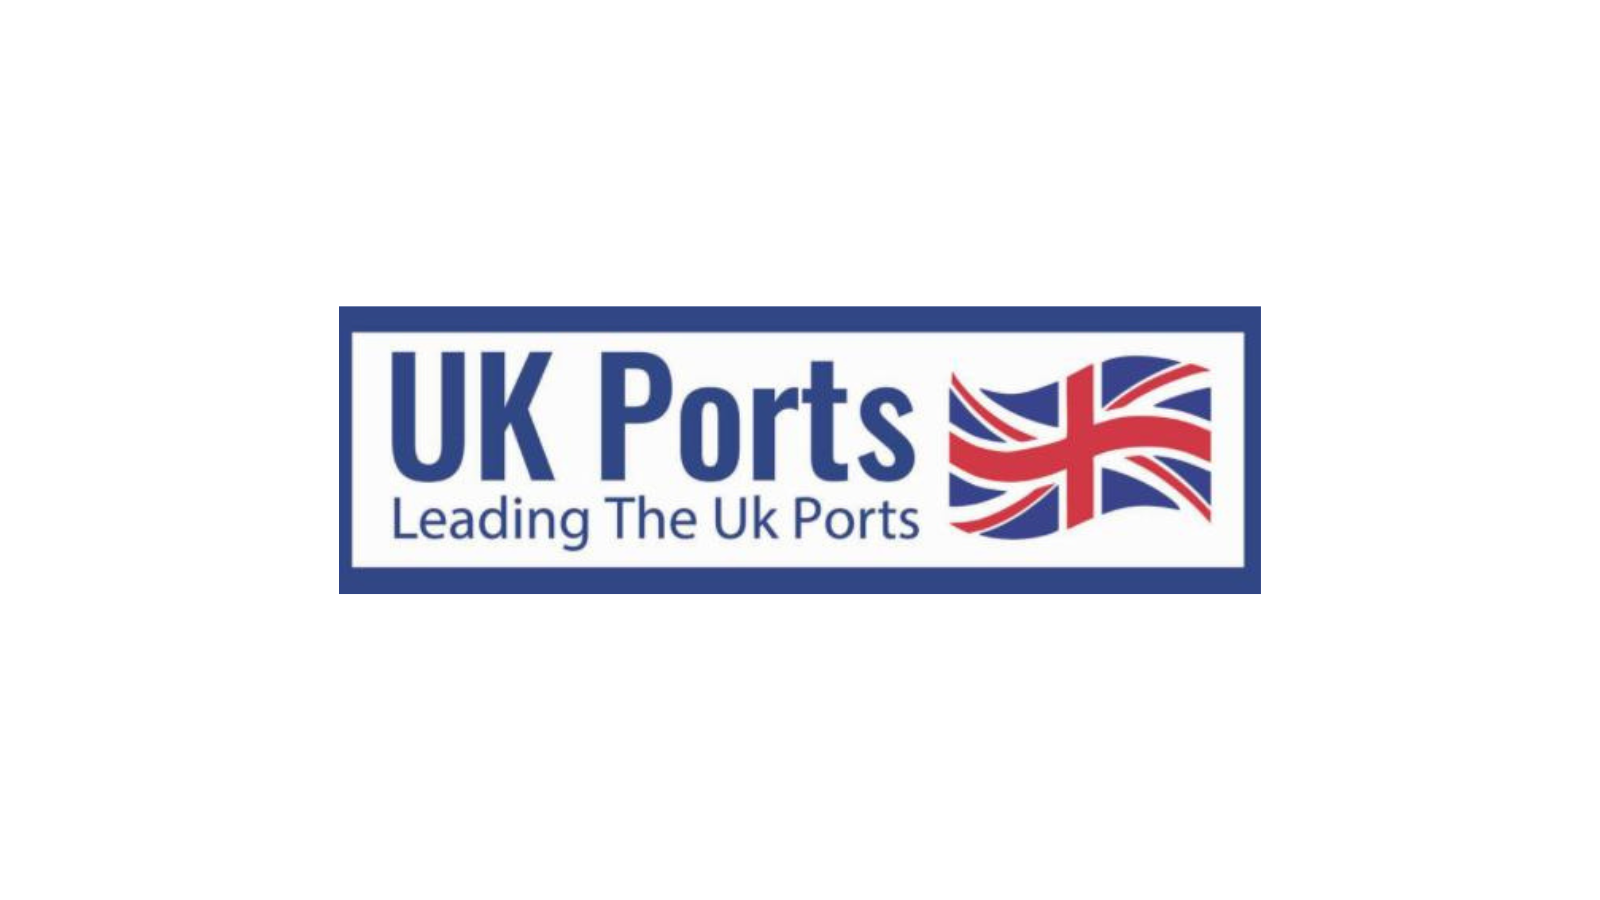 UK ports